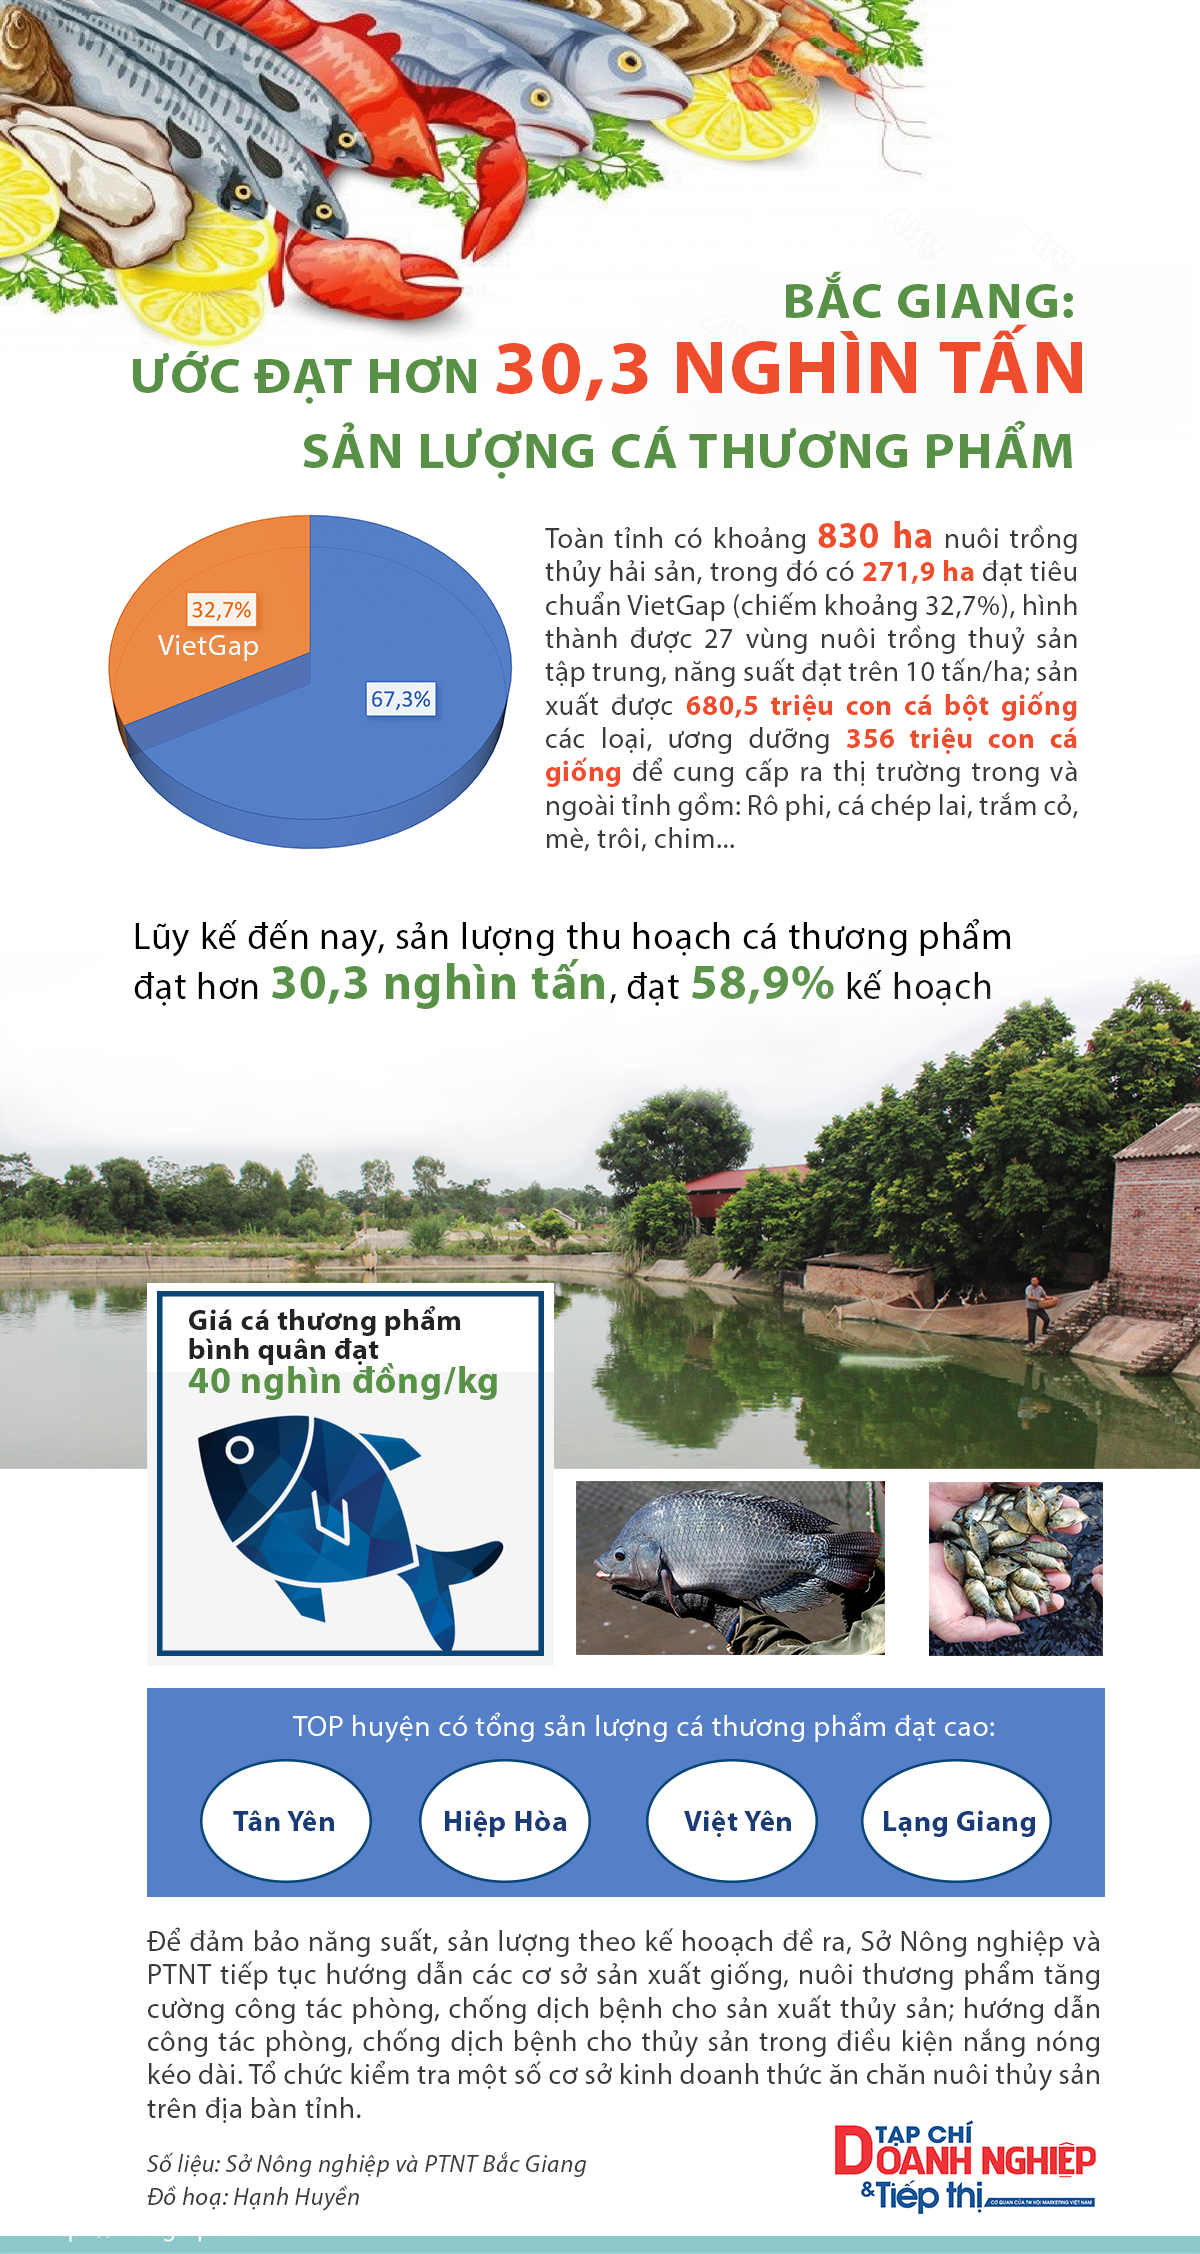 Infographic sản lượng cá thương phẩm tỉnh Bắc Giang ước đạt hơn 30,3 nghìn tấn.